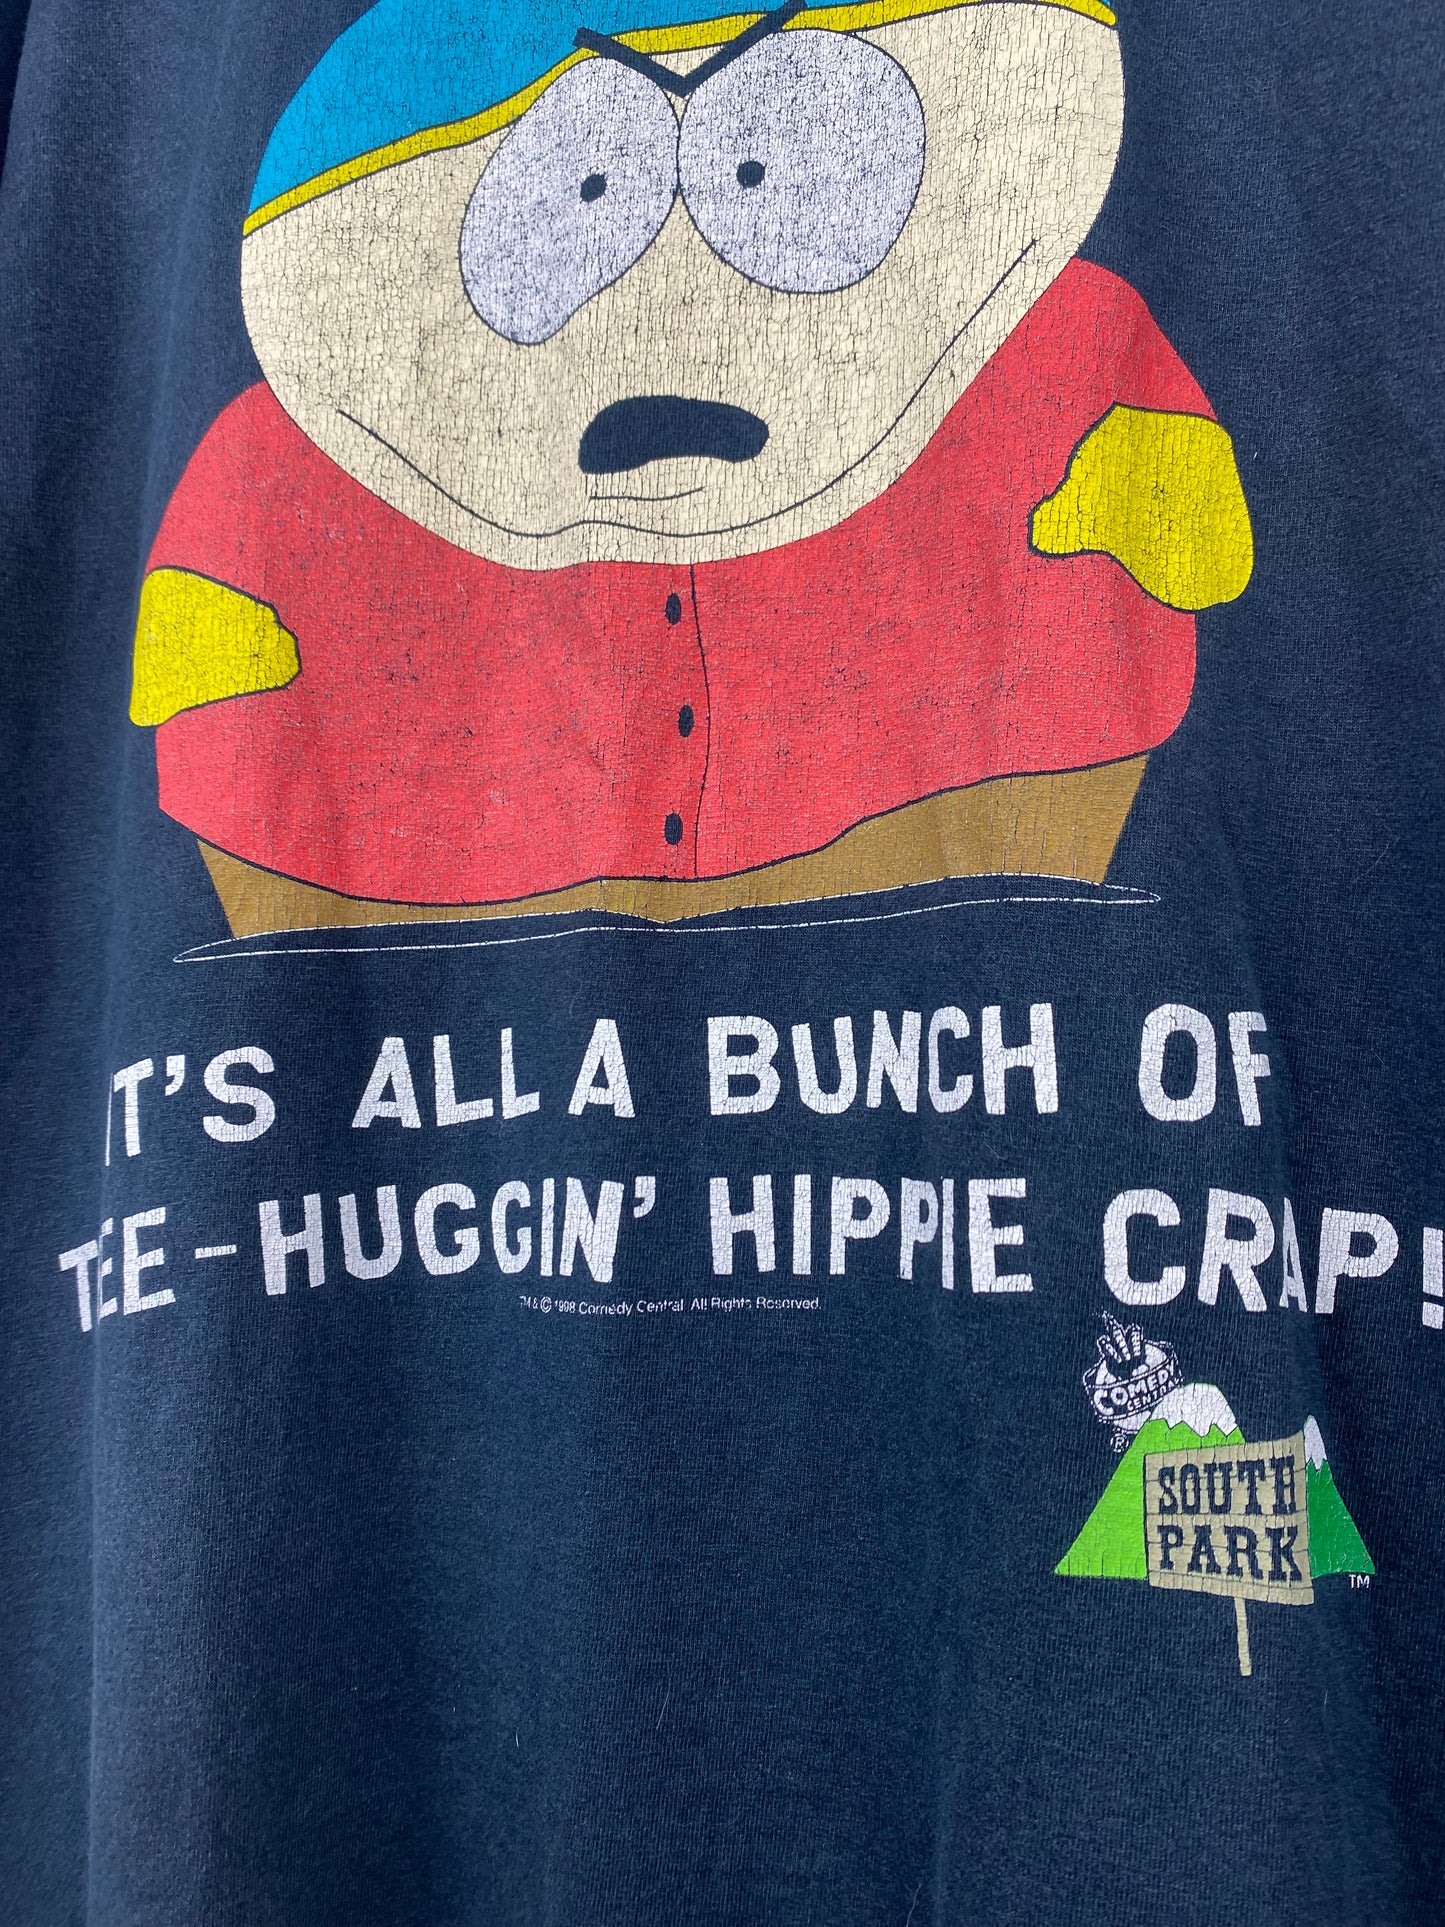 Vintage South Park “Hippie Crap” 1998 t-shirt - size L